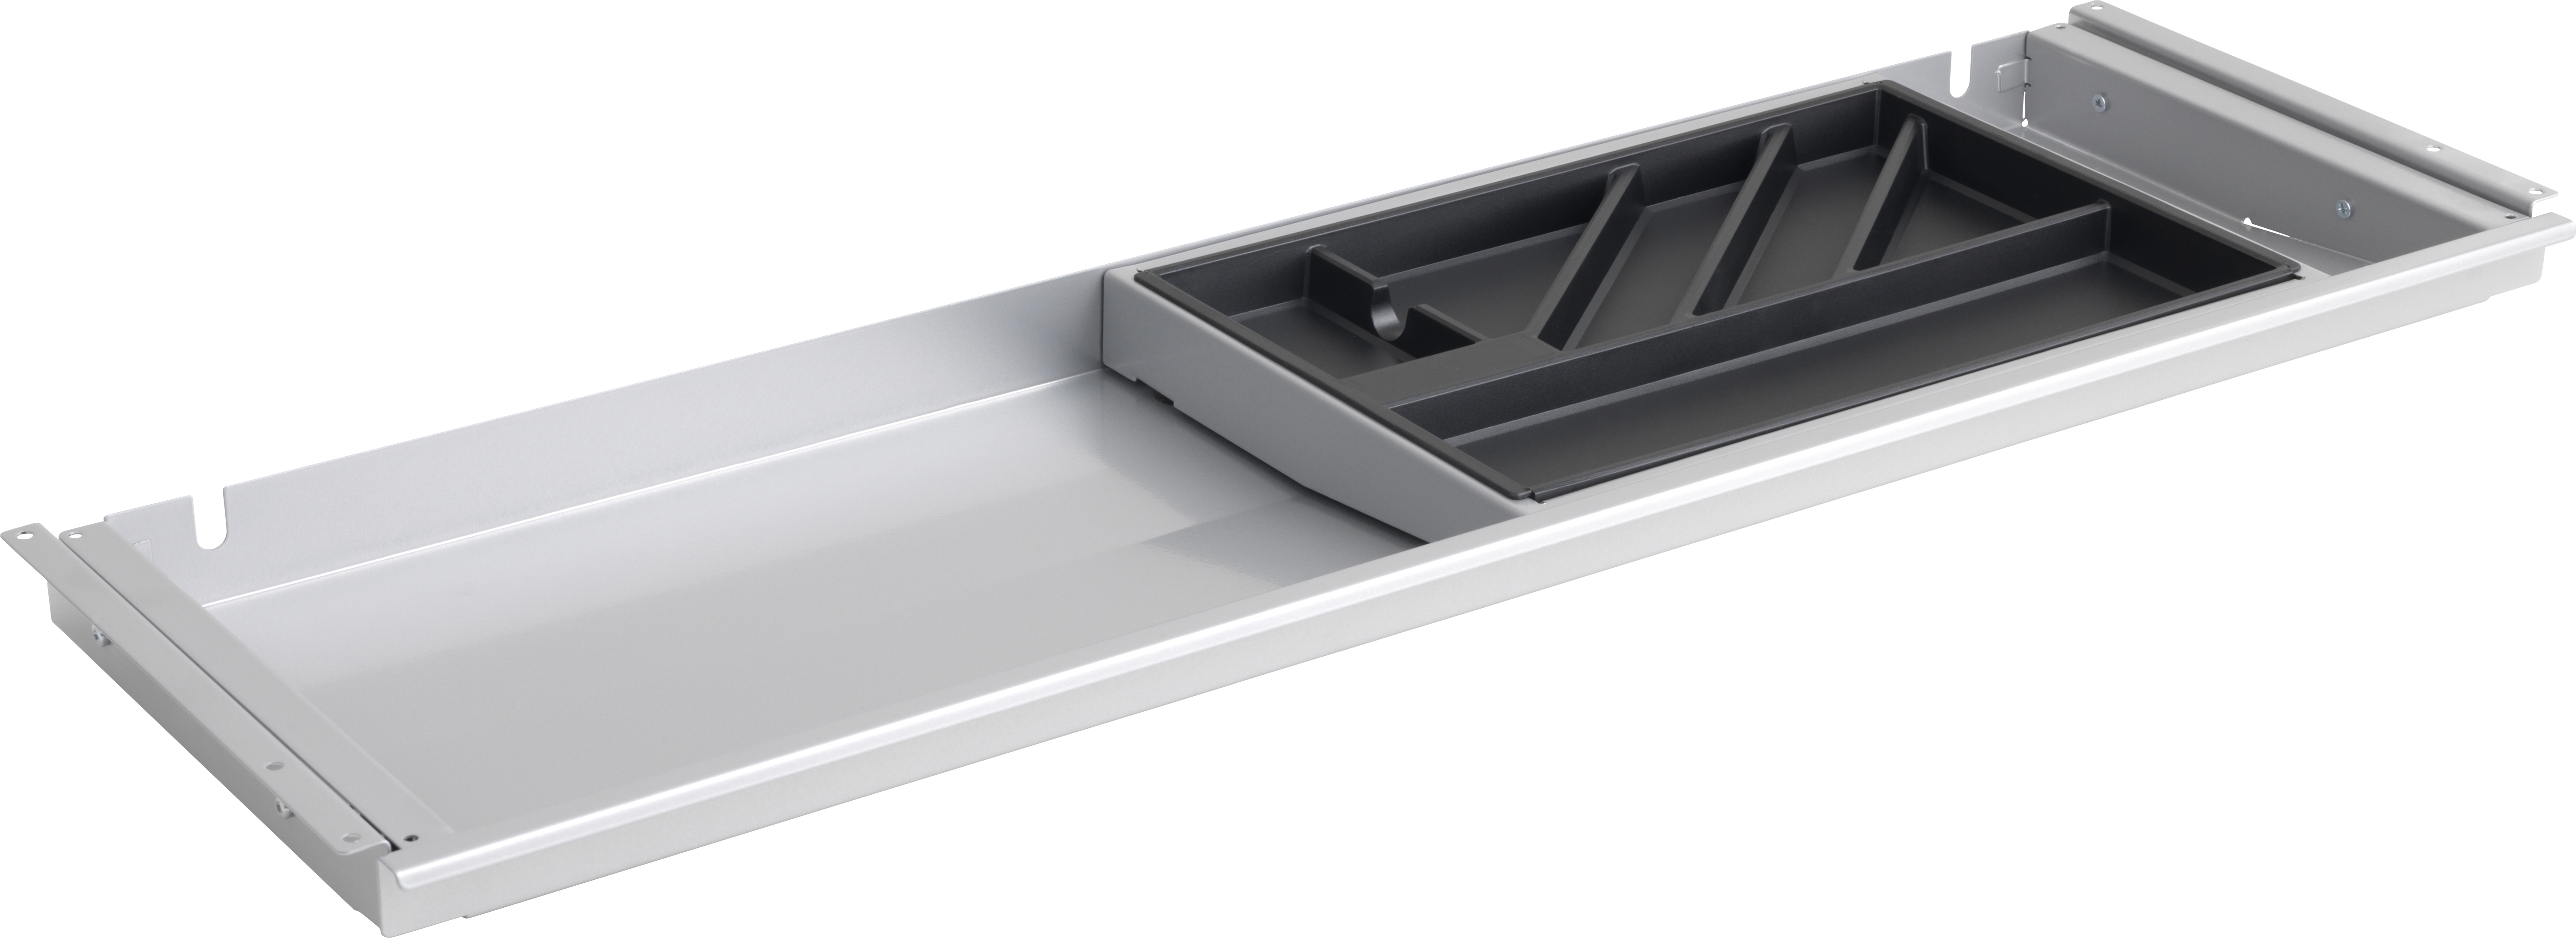 Slim Tray utdragbar låda i aluminium